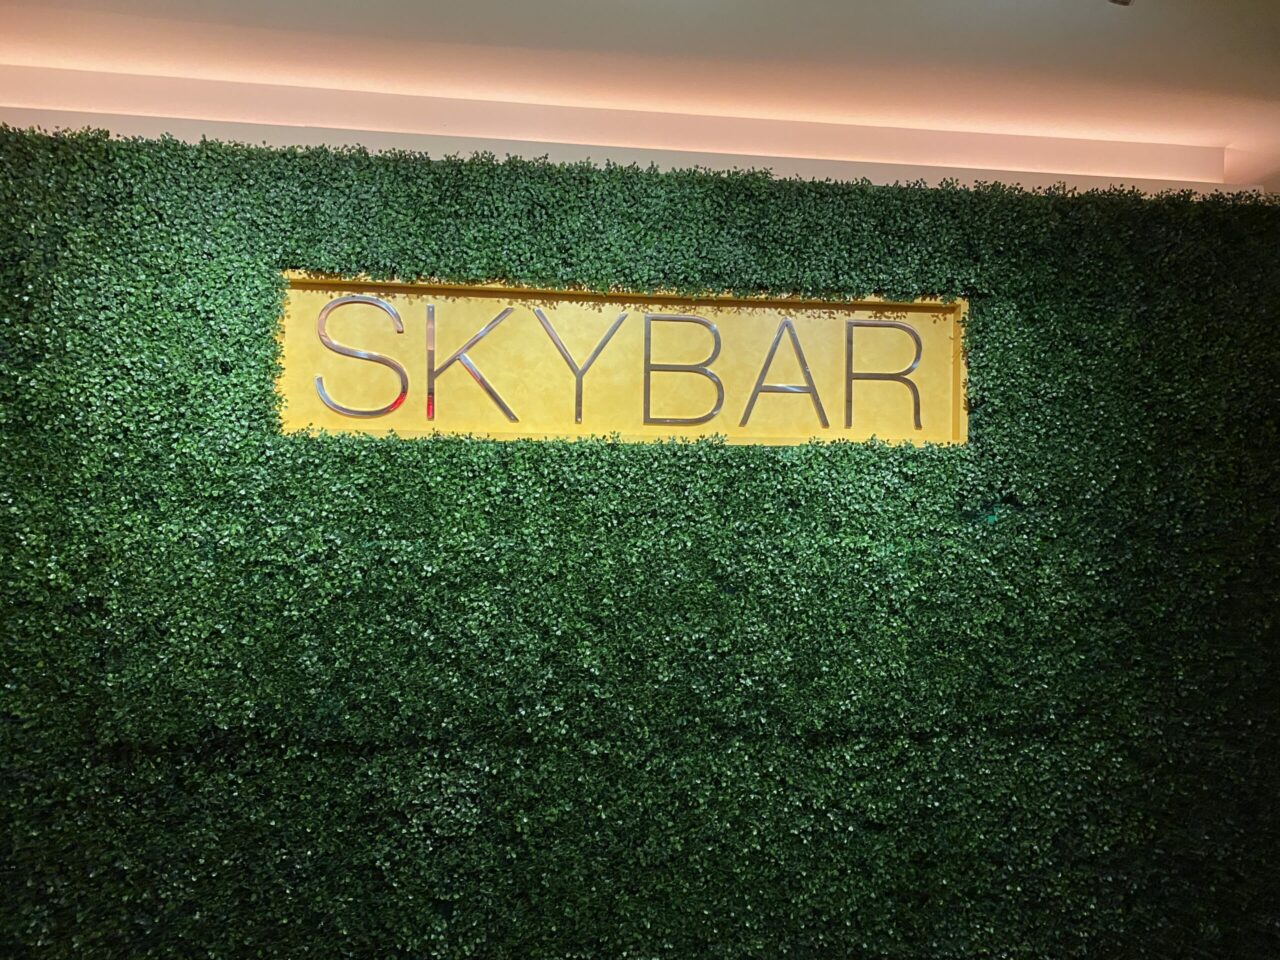 Skybar at Grand Hyatt Hotel Baha Mar 